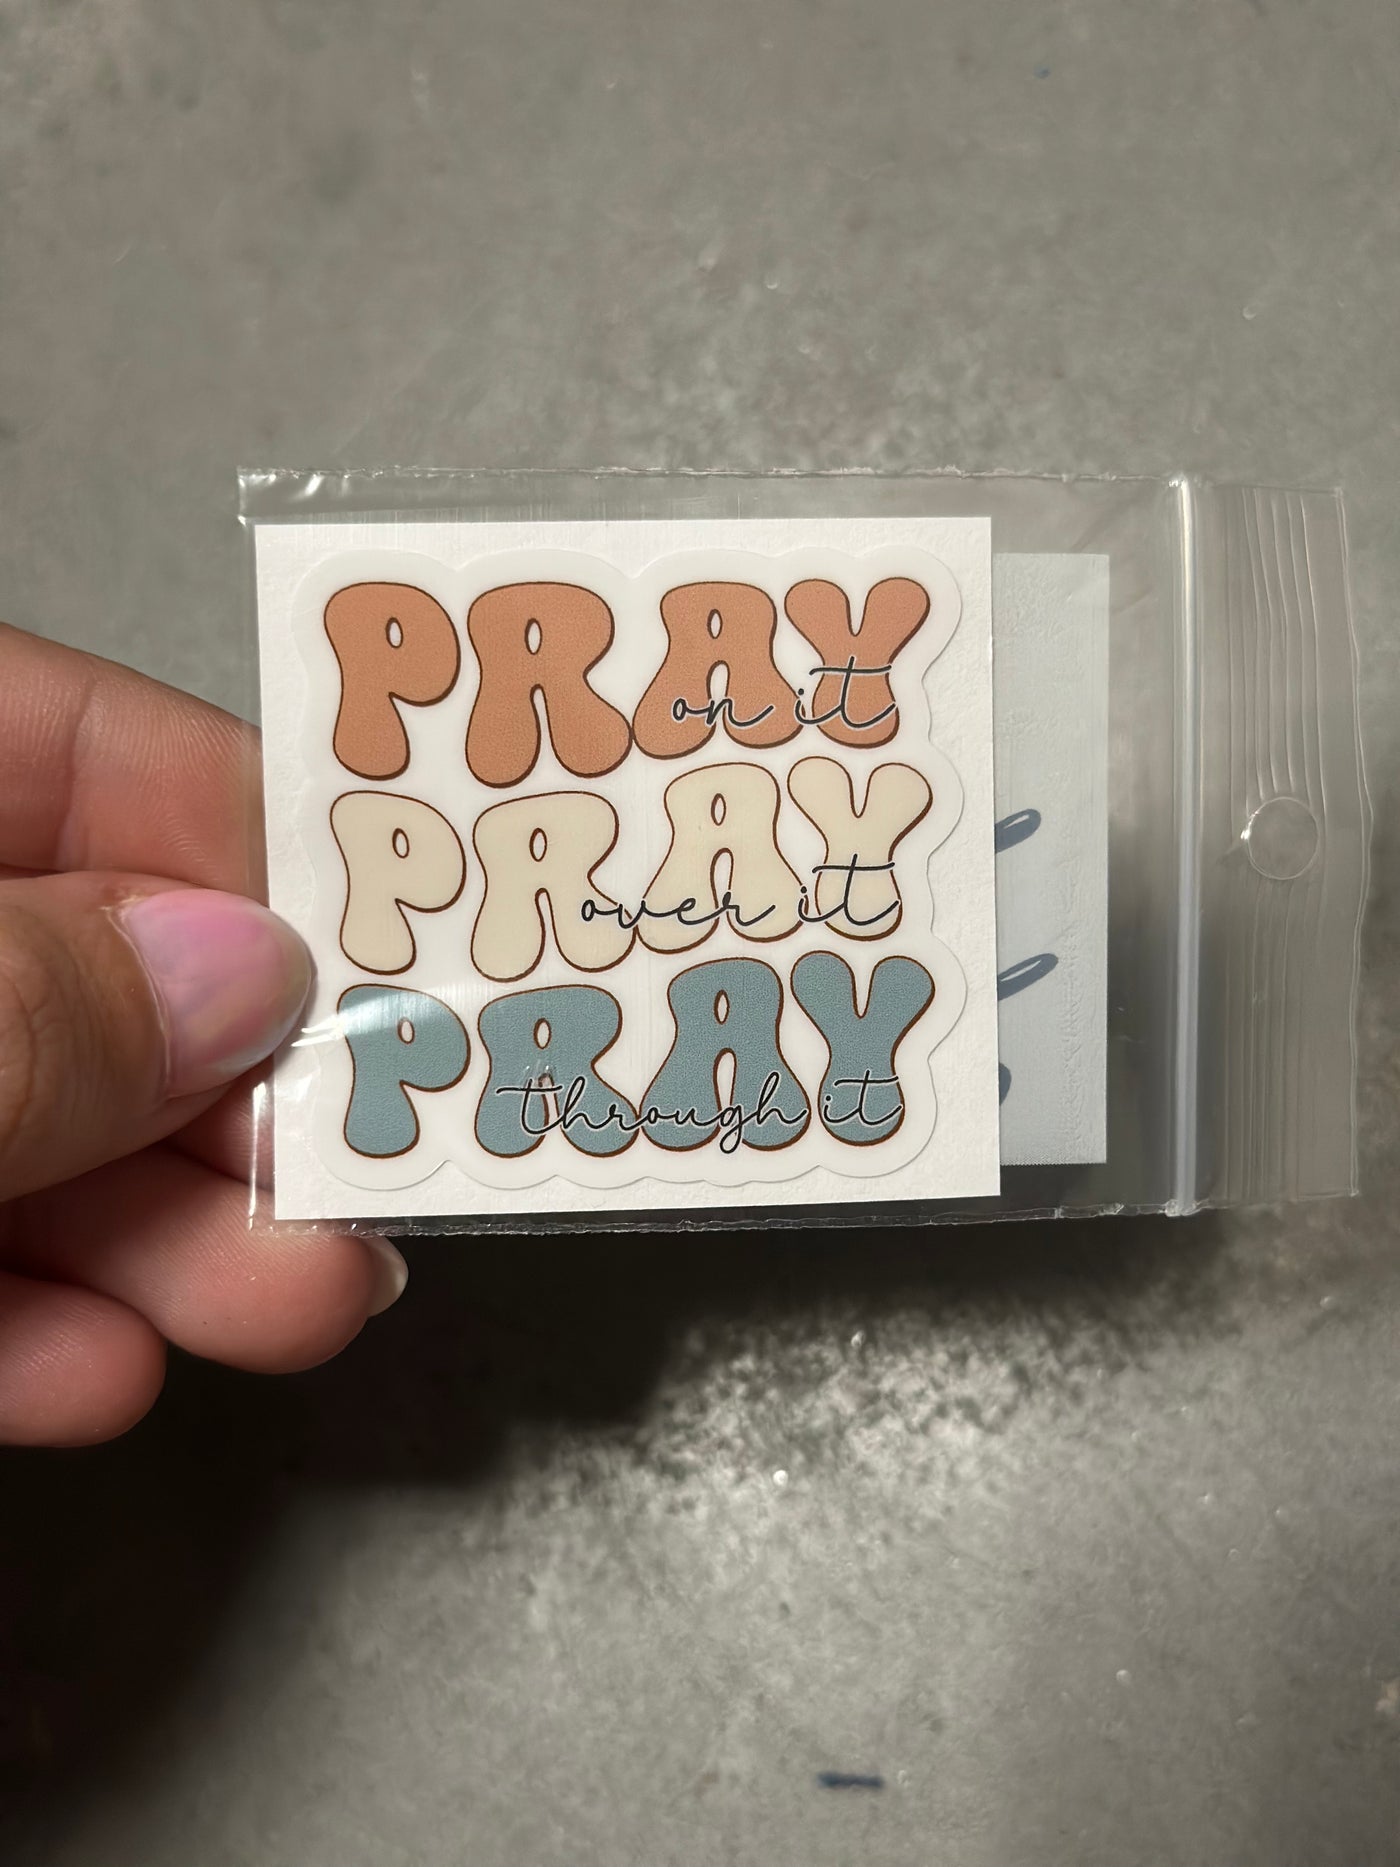 Pray Pray Pray sticker